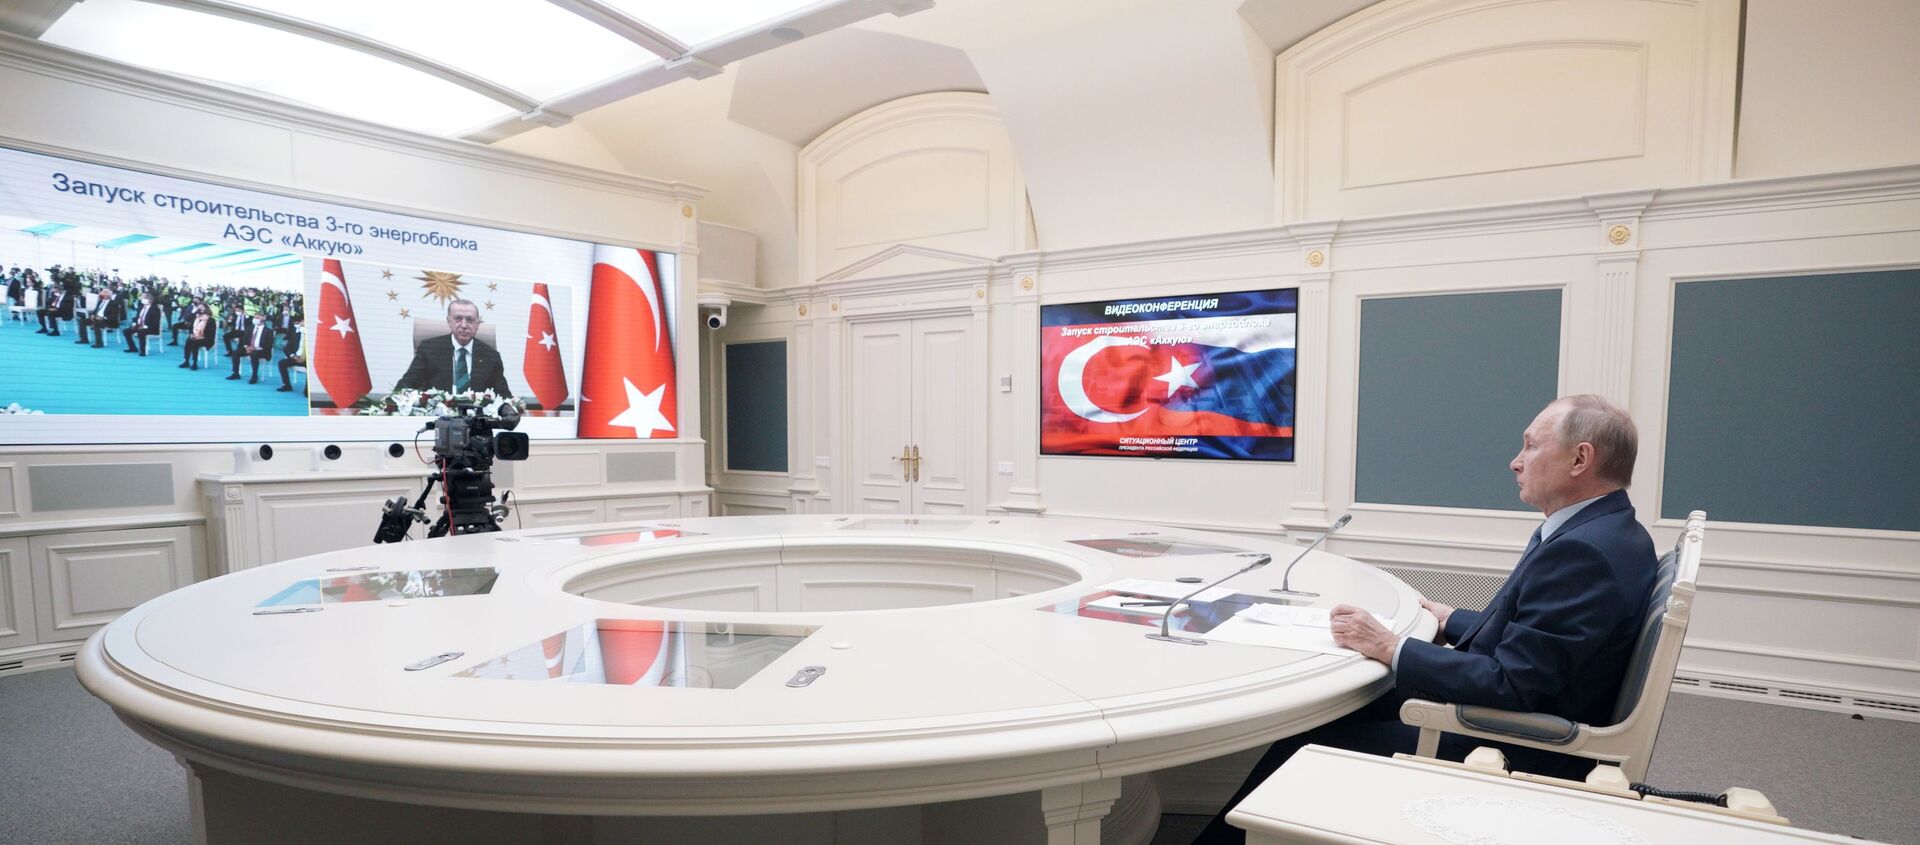 Президент РФ Владимир Путин и президент Турции Реджеп Тайип Эрдоган дали старт строительству третьего энергоблока АЭС Аккую, 10 марта 2021 - Sputnik Латвия, 1920, 10.03.2021